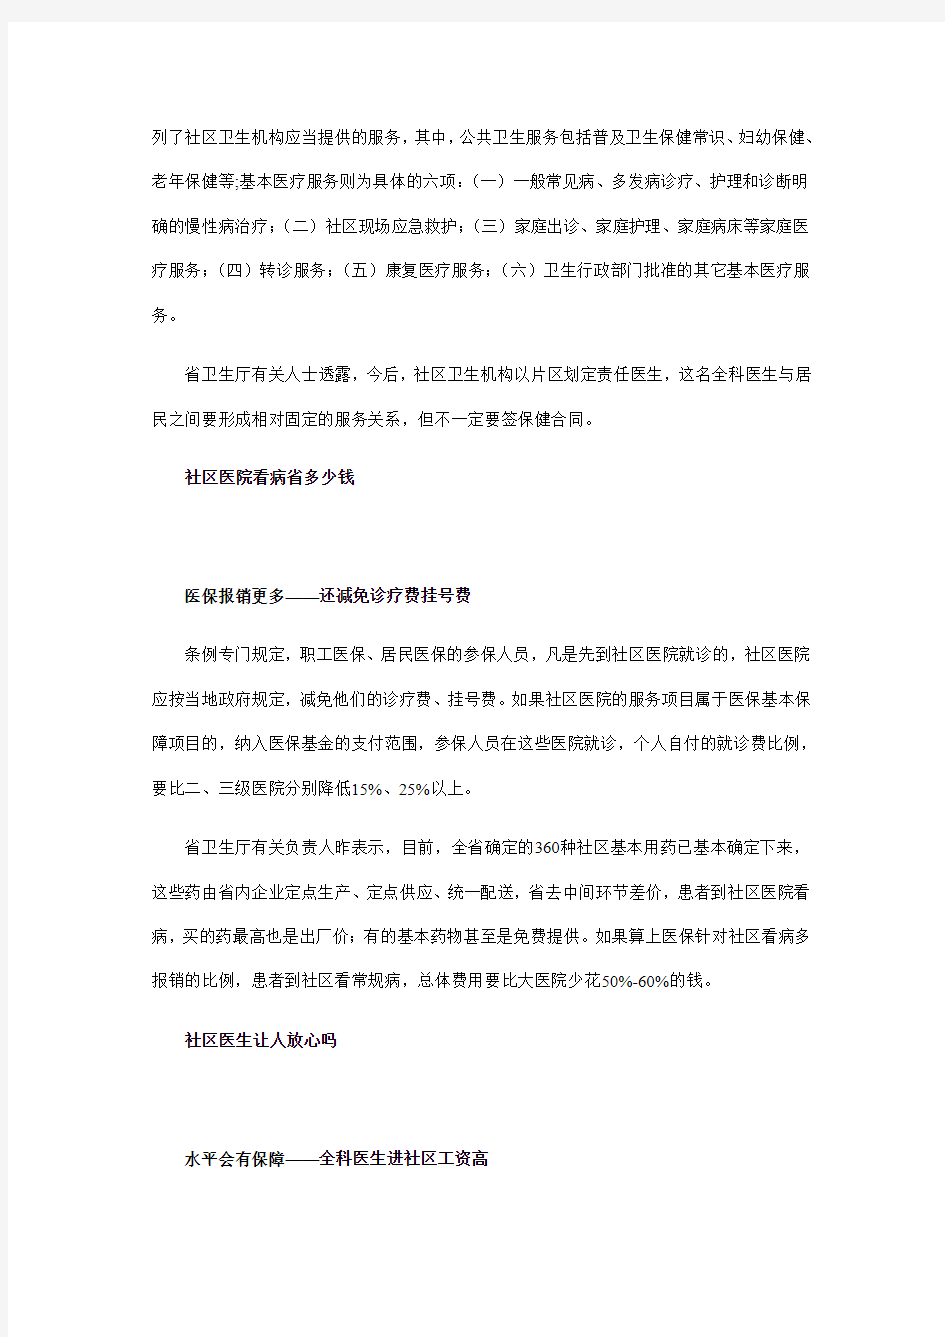 江苏省城市社区卫生服务条例2008年10月1日起实施